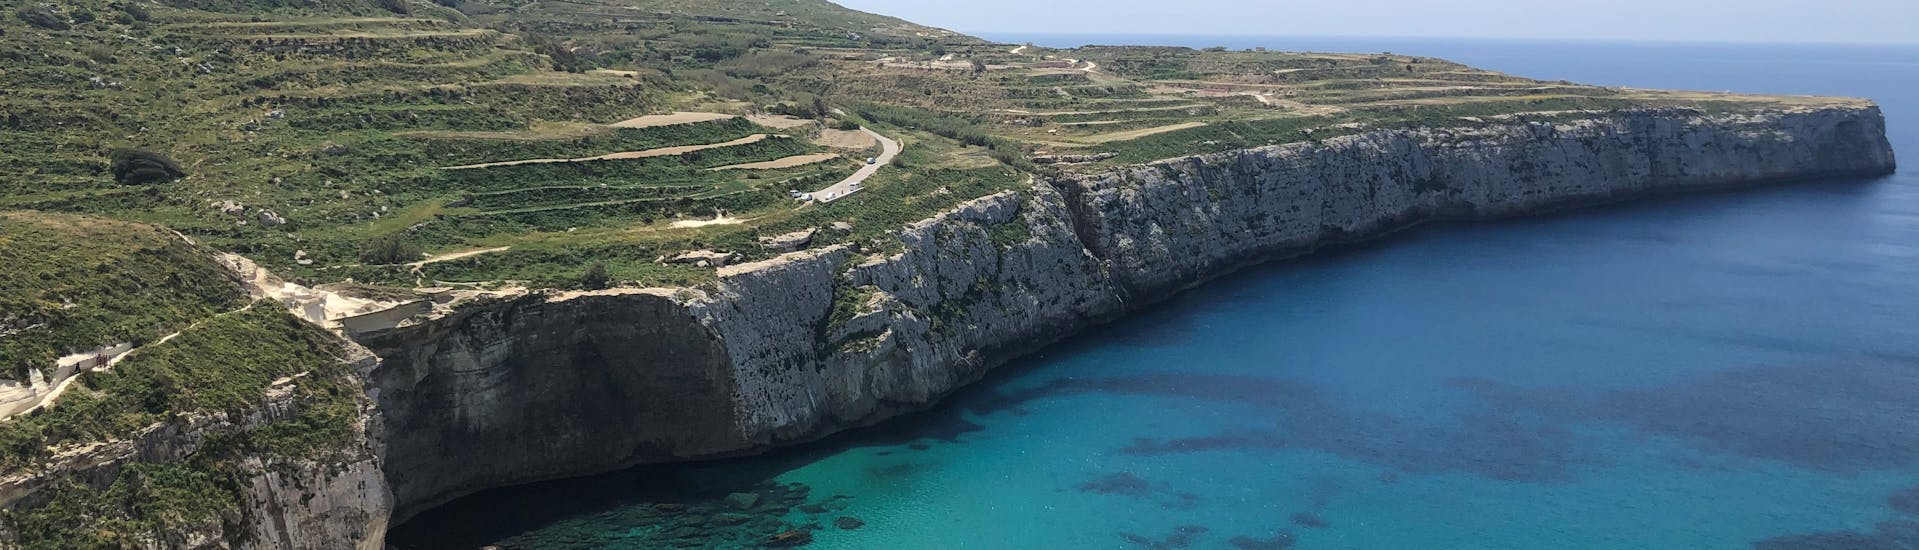 Vista di Comino durante la Gita in barca a Comino e alla Laguna Blu con sosta per nuotare e fare snorkeling con Supreme Travel Malta